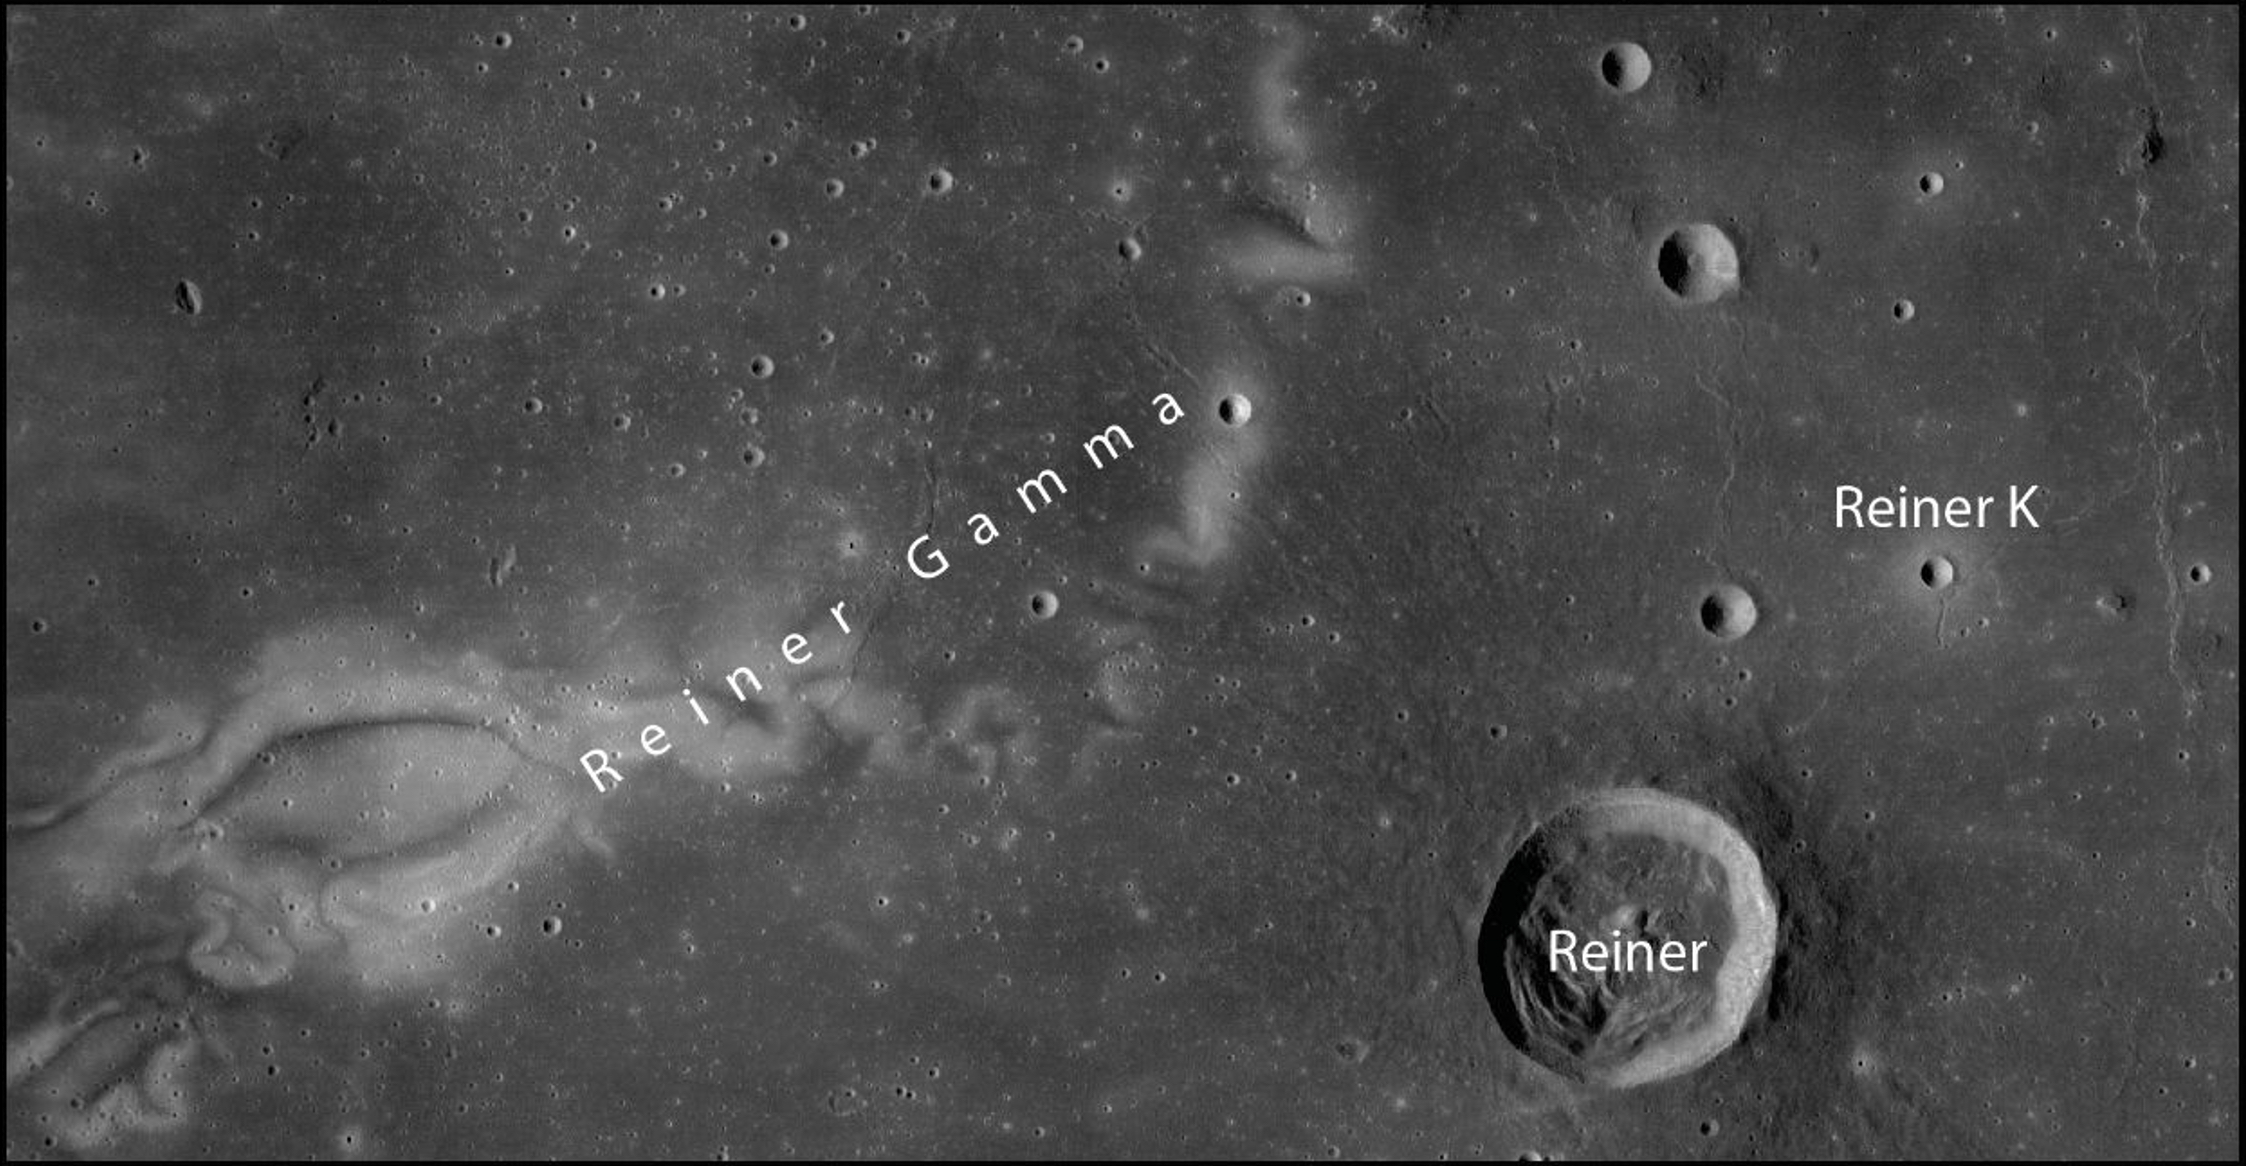 Otkrivene metarske stijene u blizini kratera Reiner K u regiji 'Reiner Gamma', poznatoj po svojoj magnetskoj anomaliji. Zasluge: NASA LRO/NAC.